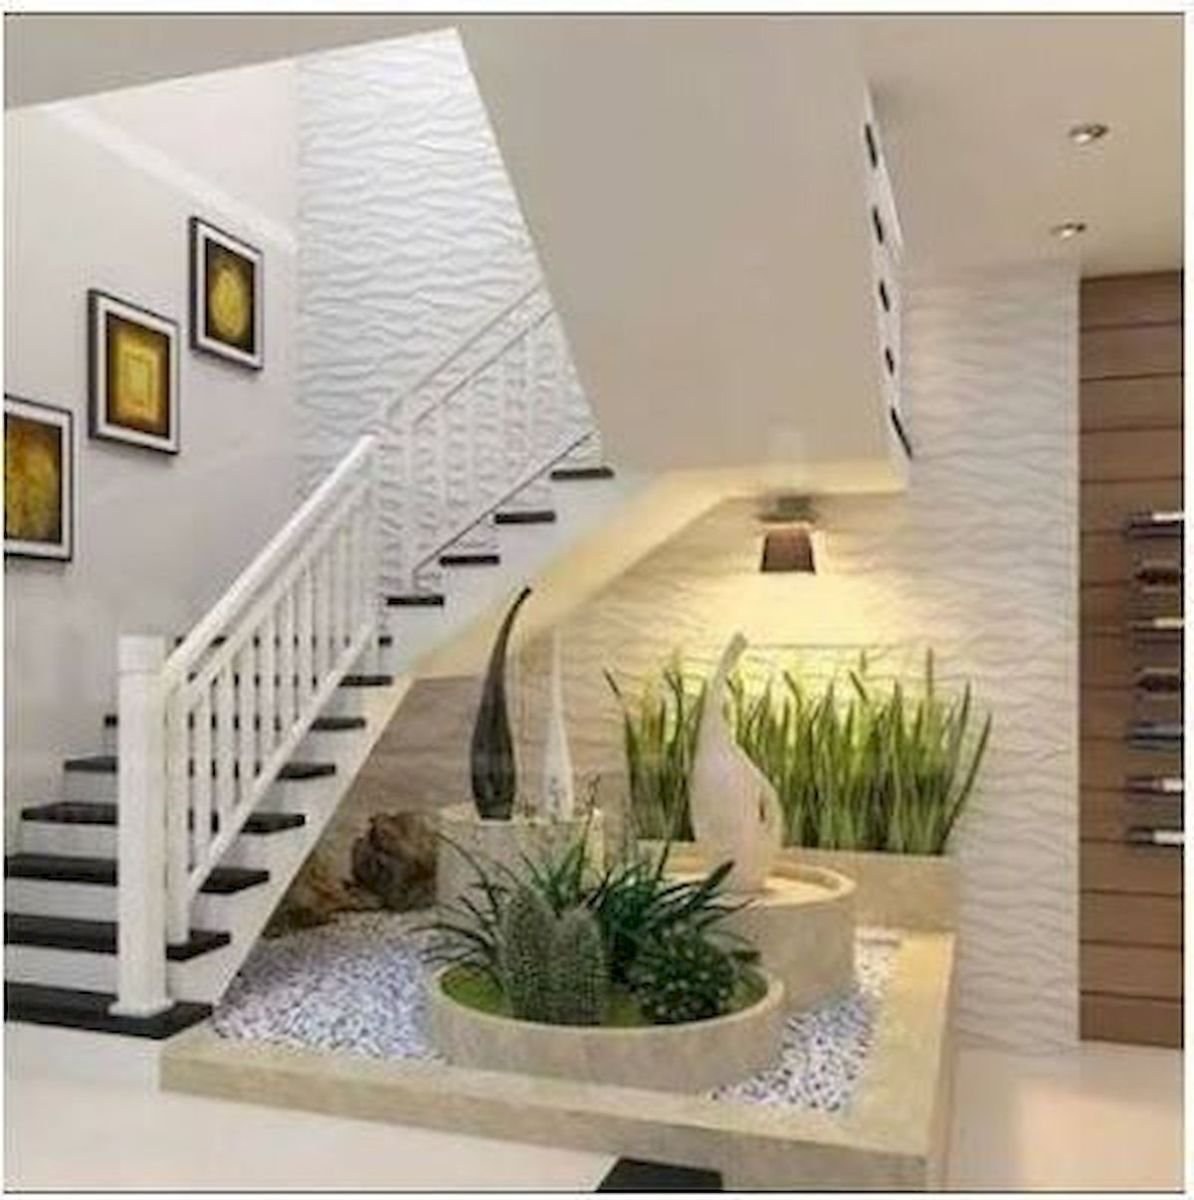 дизайн лестницы в доме на второй